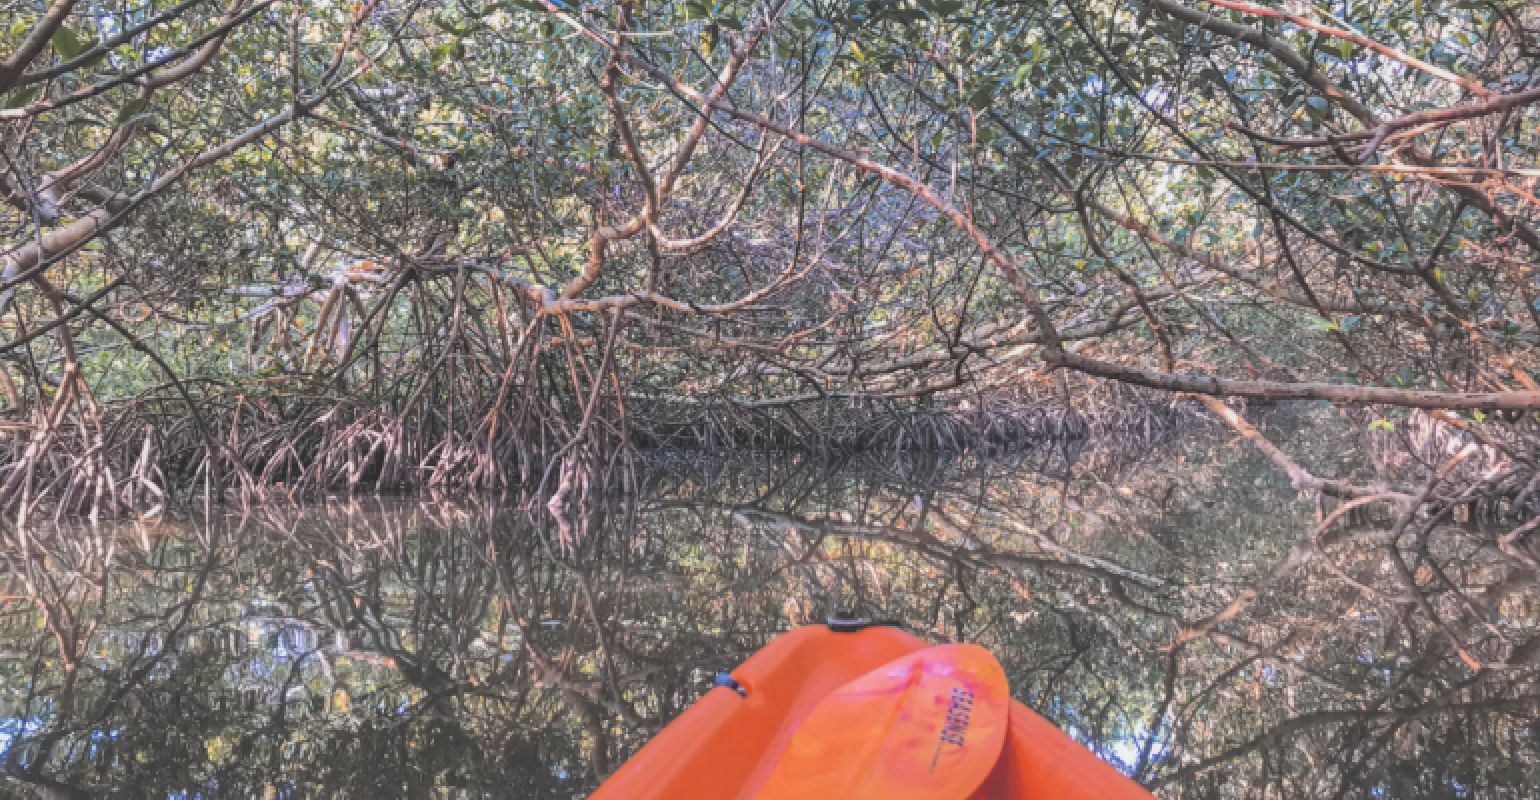 Kayaking Lido Key Mangroves in Sarasota_MeetingsNet_1540 x 800.png